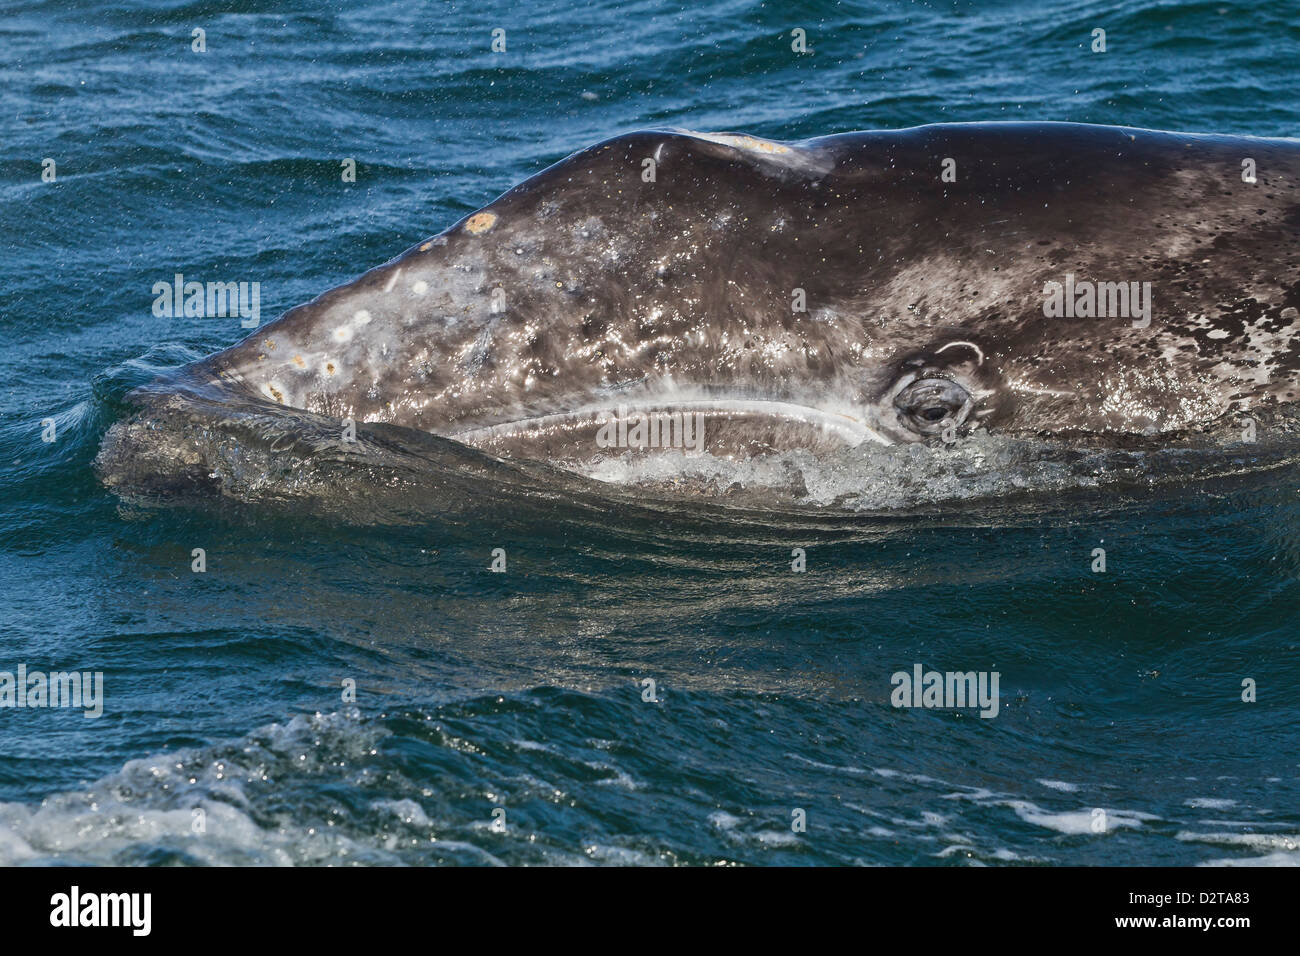 California ballena gris (Eschrichtius robustus), Laguna San Ignacio, Baja California Sur, México, América del Norte Foto de stock